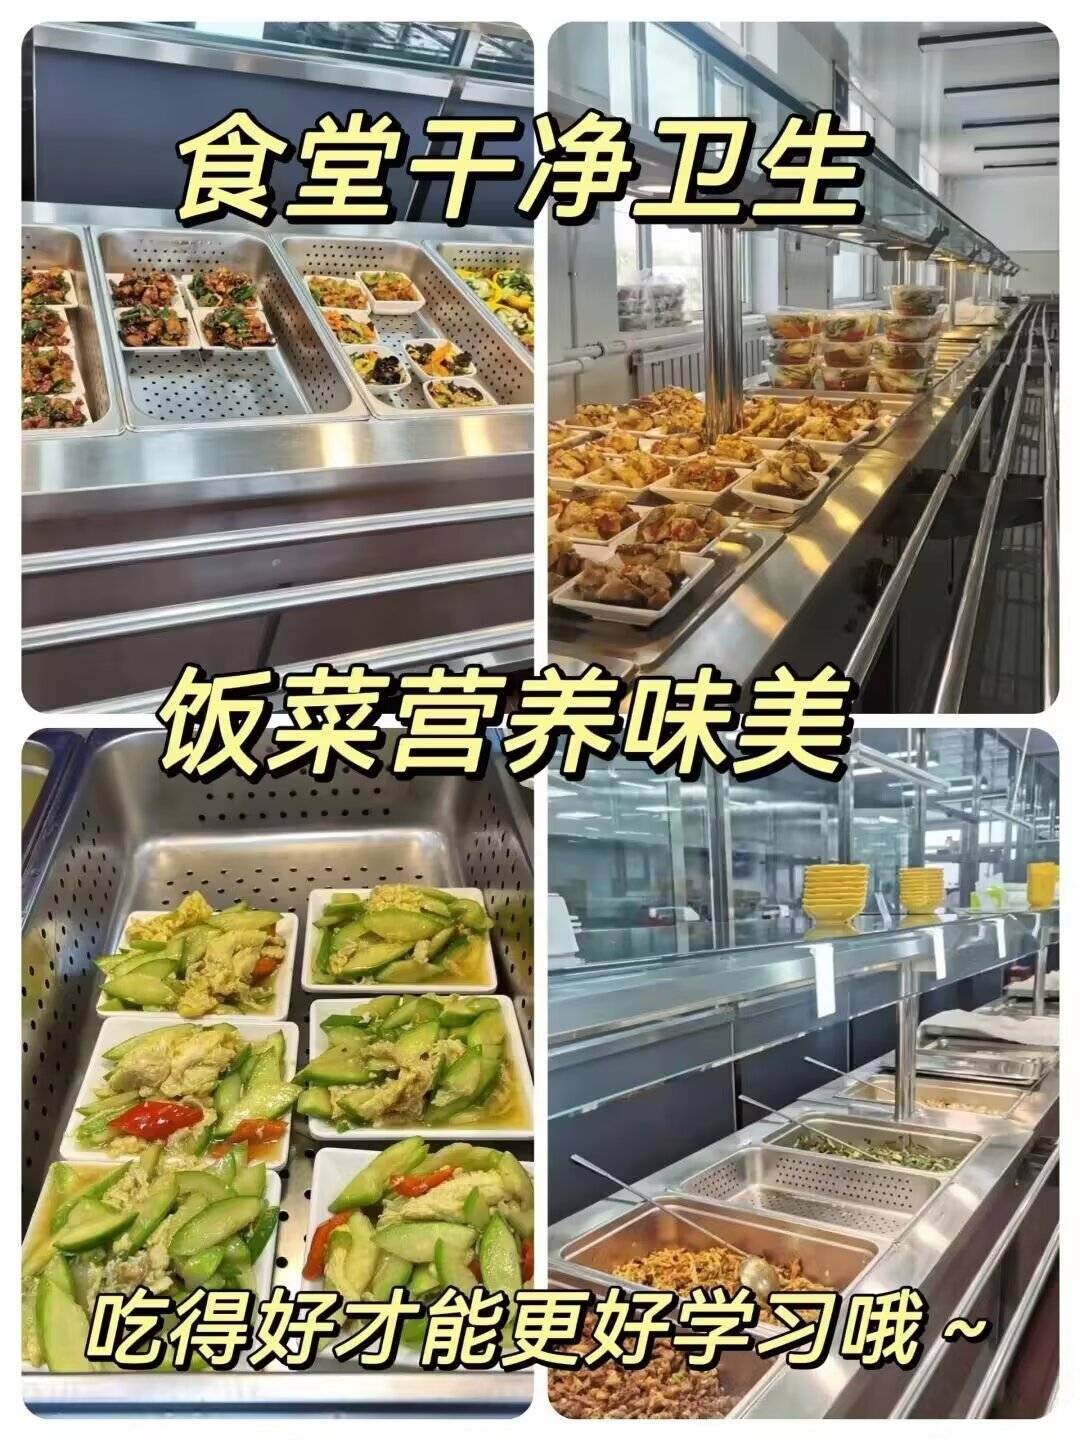 中国政法大学食堂图片图片